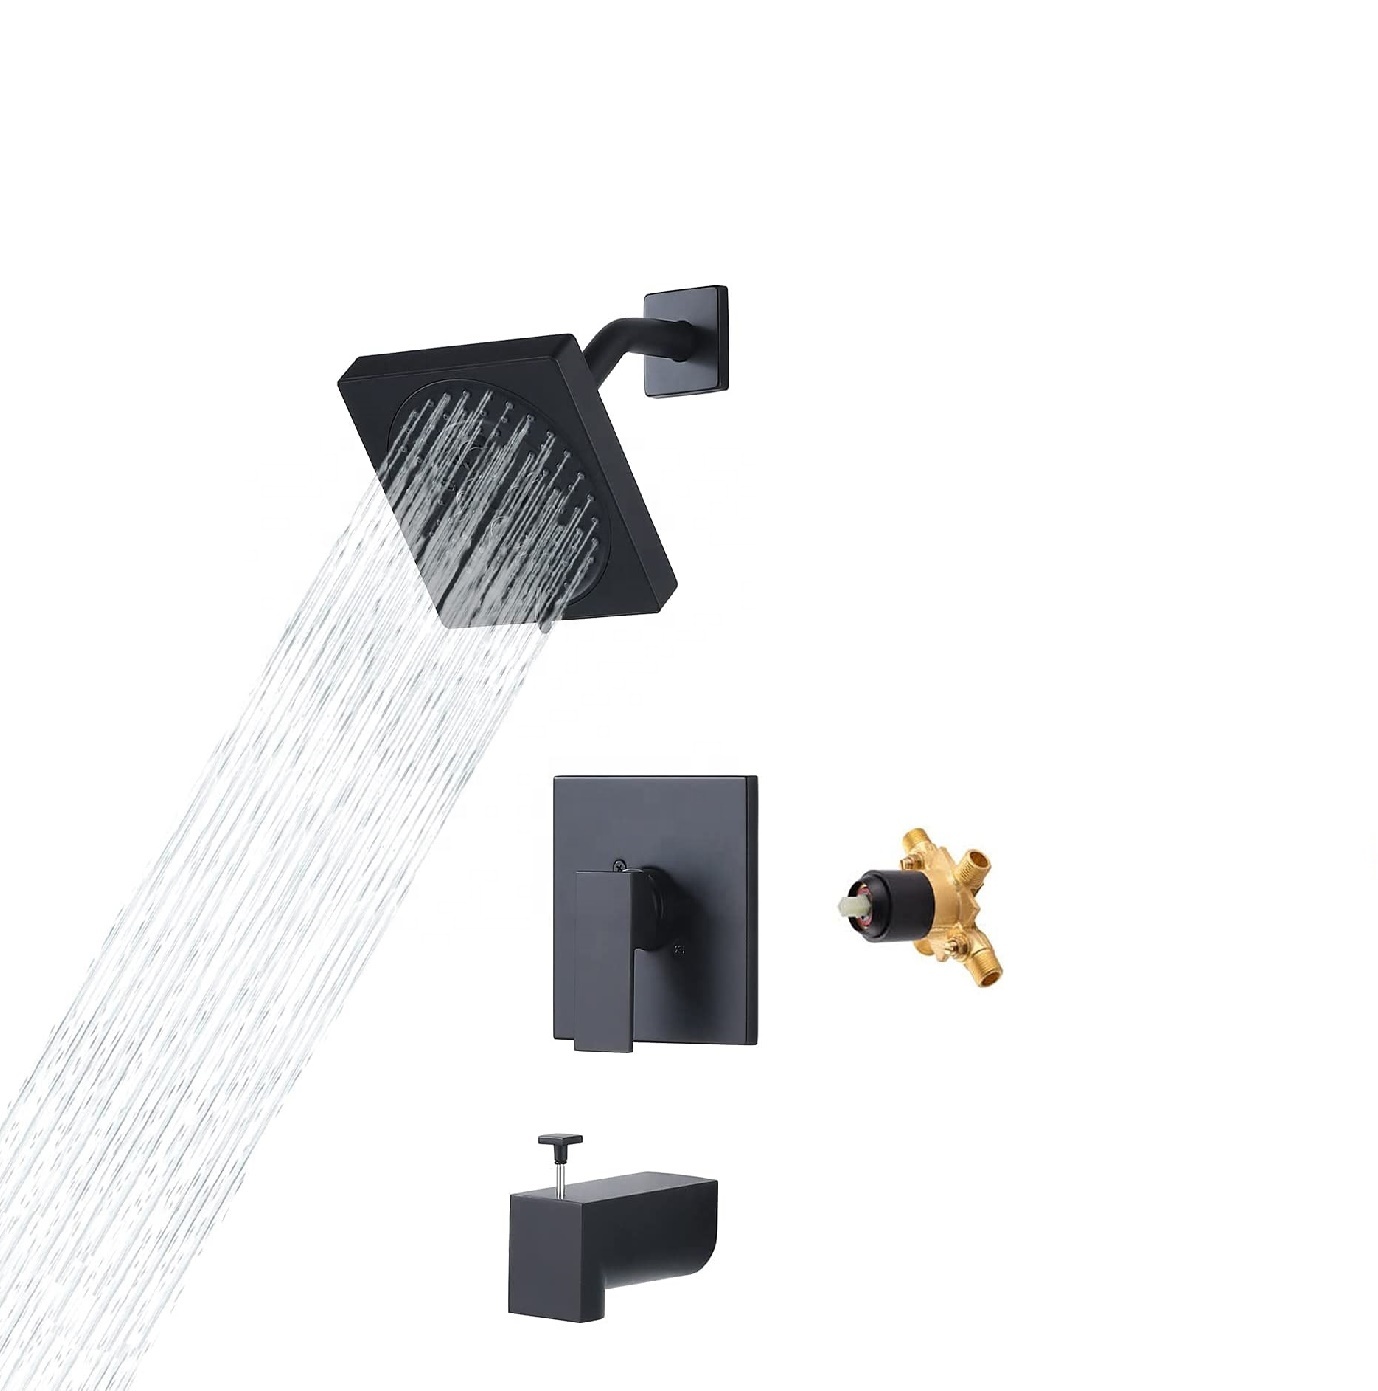 Novo design de parede de latão misturador de banheiro com torneira quadrada preta para chuveiro